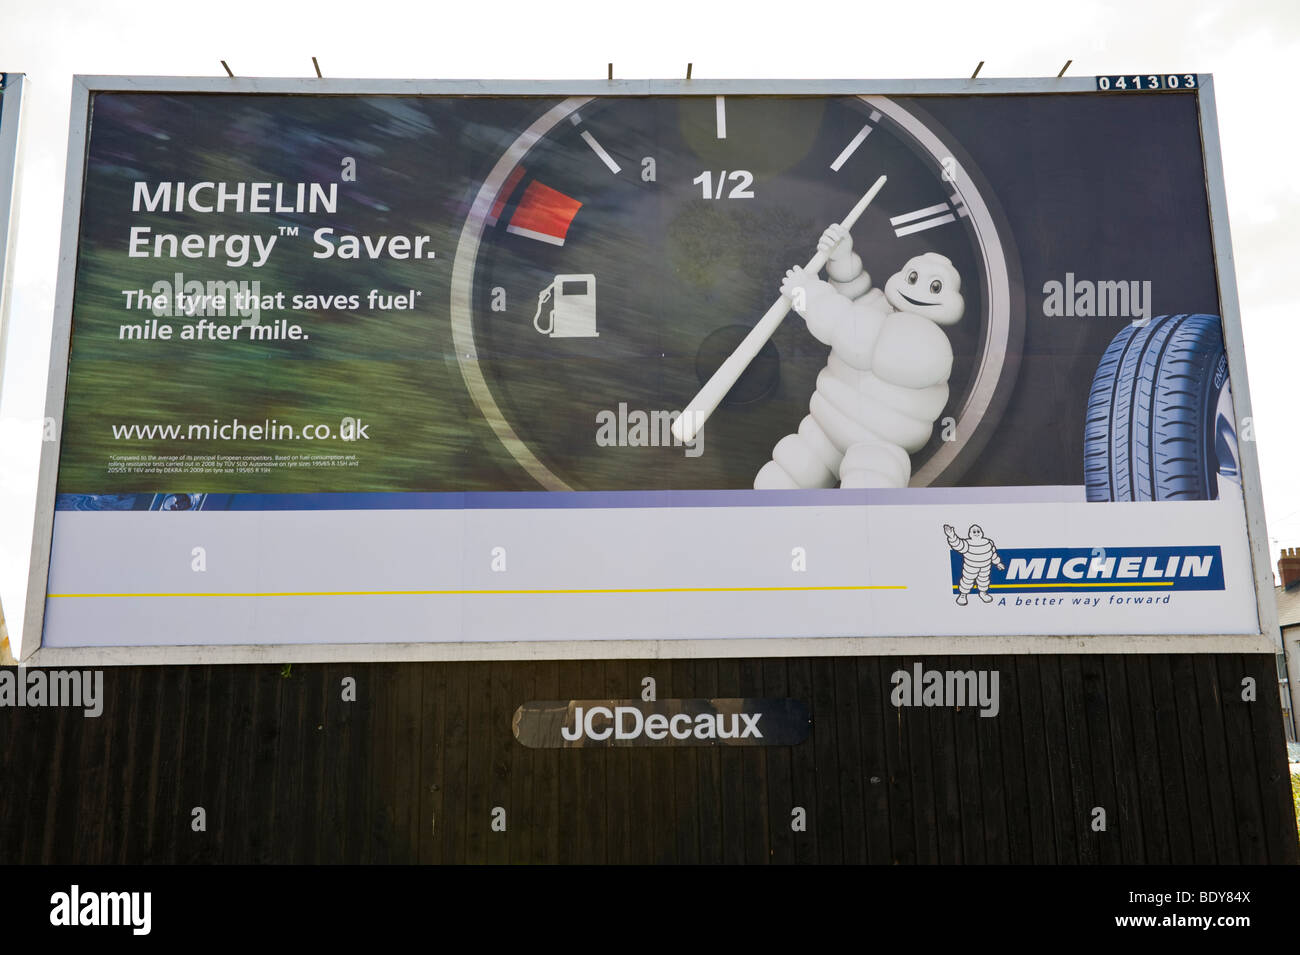 JCDecaux affissioni per pneumatici MICHELIN NEL REGNO UNITO Foto Stock